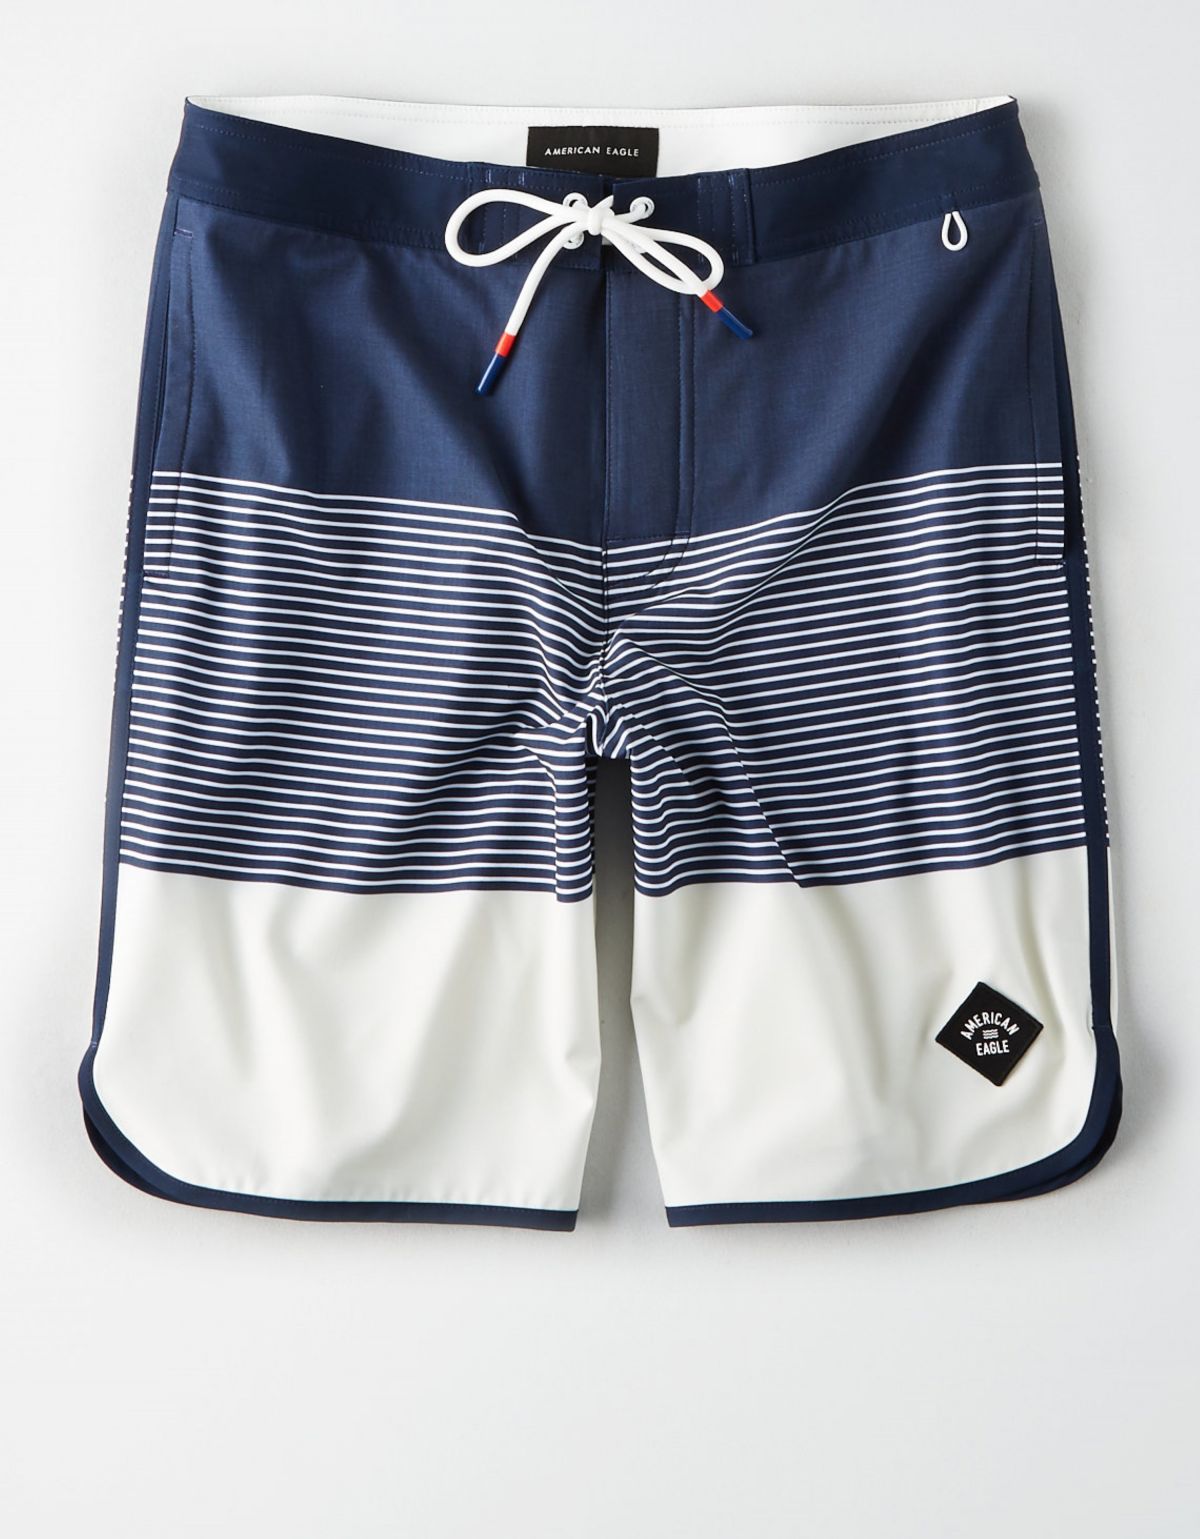  מכנסי בגד ים קולור בלוק עם פאץ' לוגו של AMERICAN EAGLE